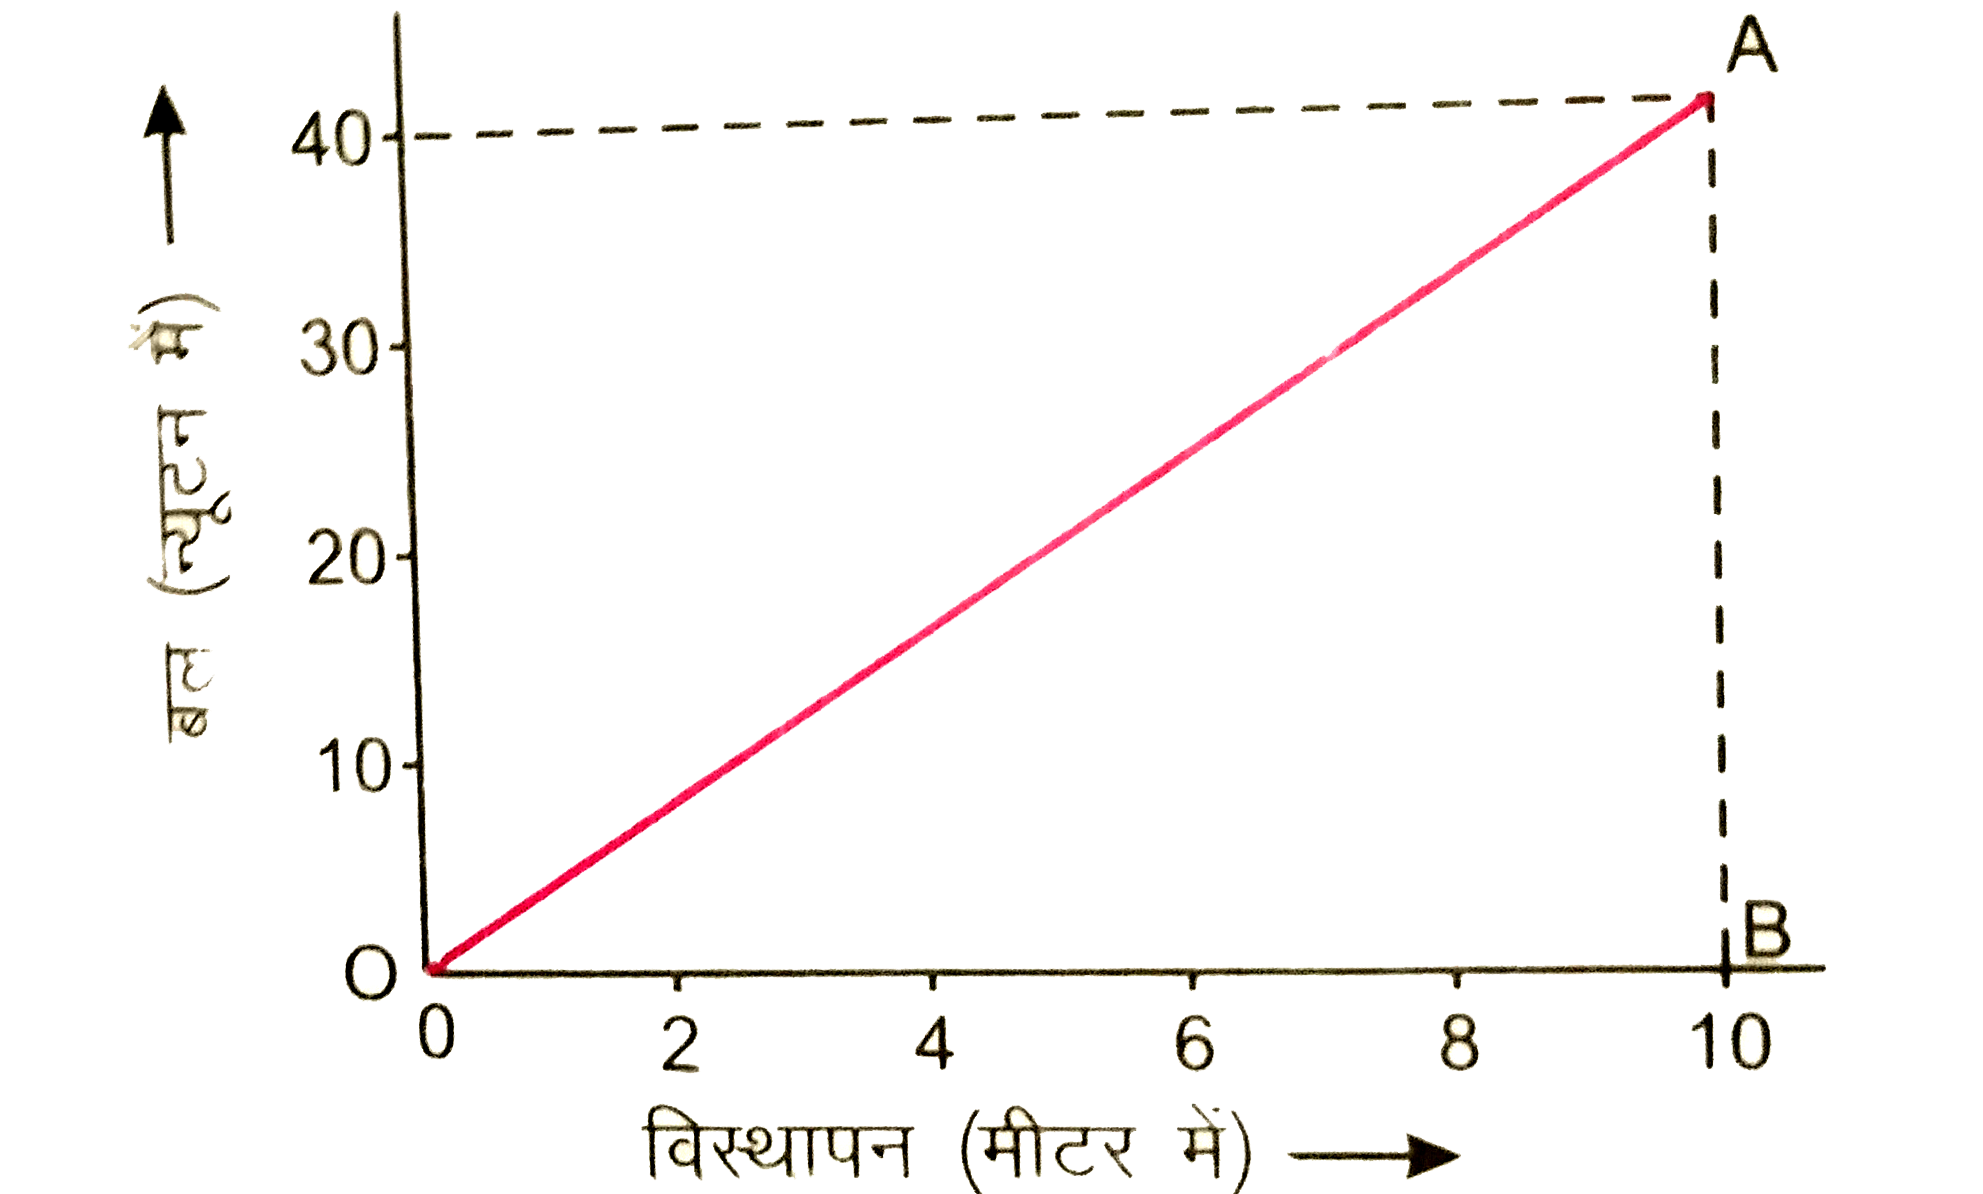 संलग्न चित्र 7.6 में किसी वस्तु के लिए बल - विस्थापन ग्राफ प्रदर्शित है| शून्य से 10 मीटर विस्थापन तल बल द्वारा किये गये कार्य की गणना कीजिए |